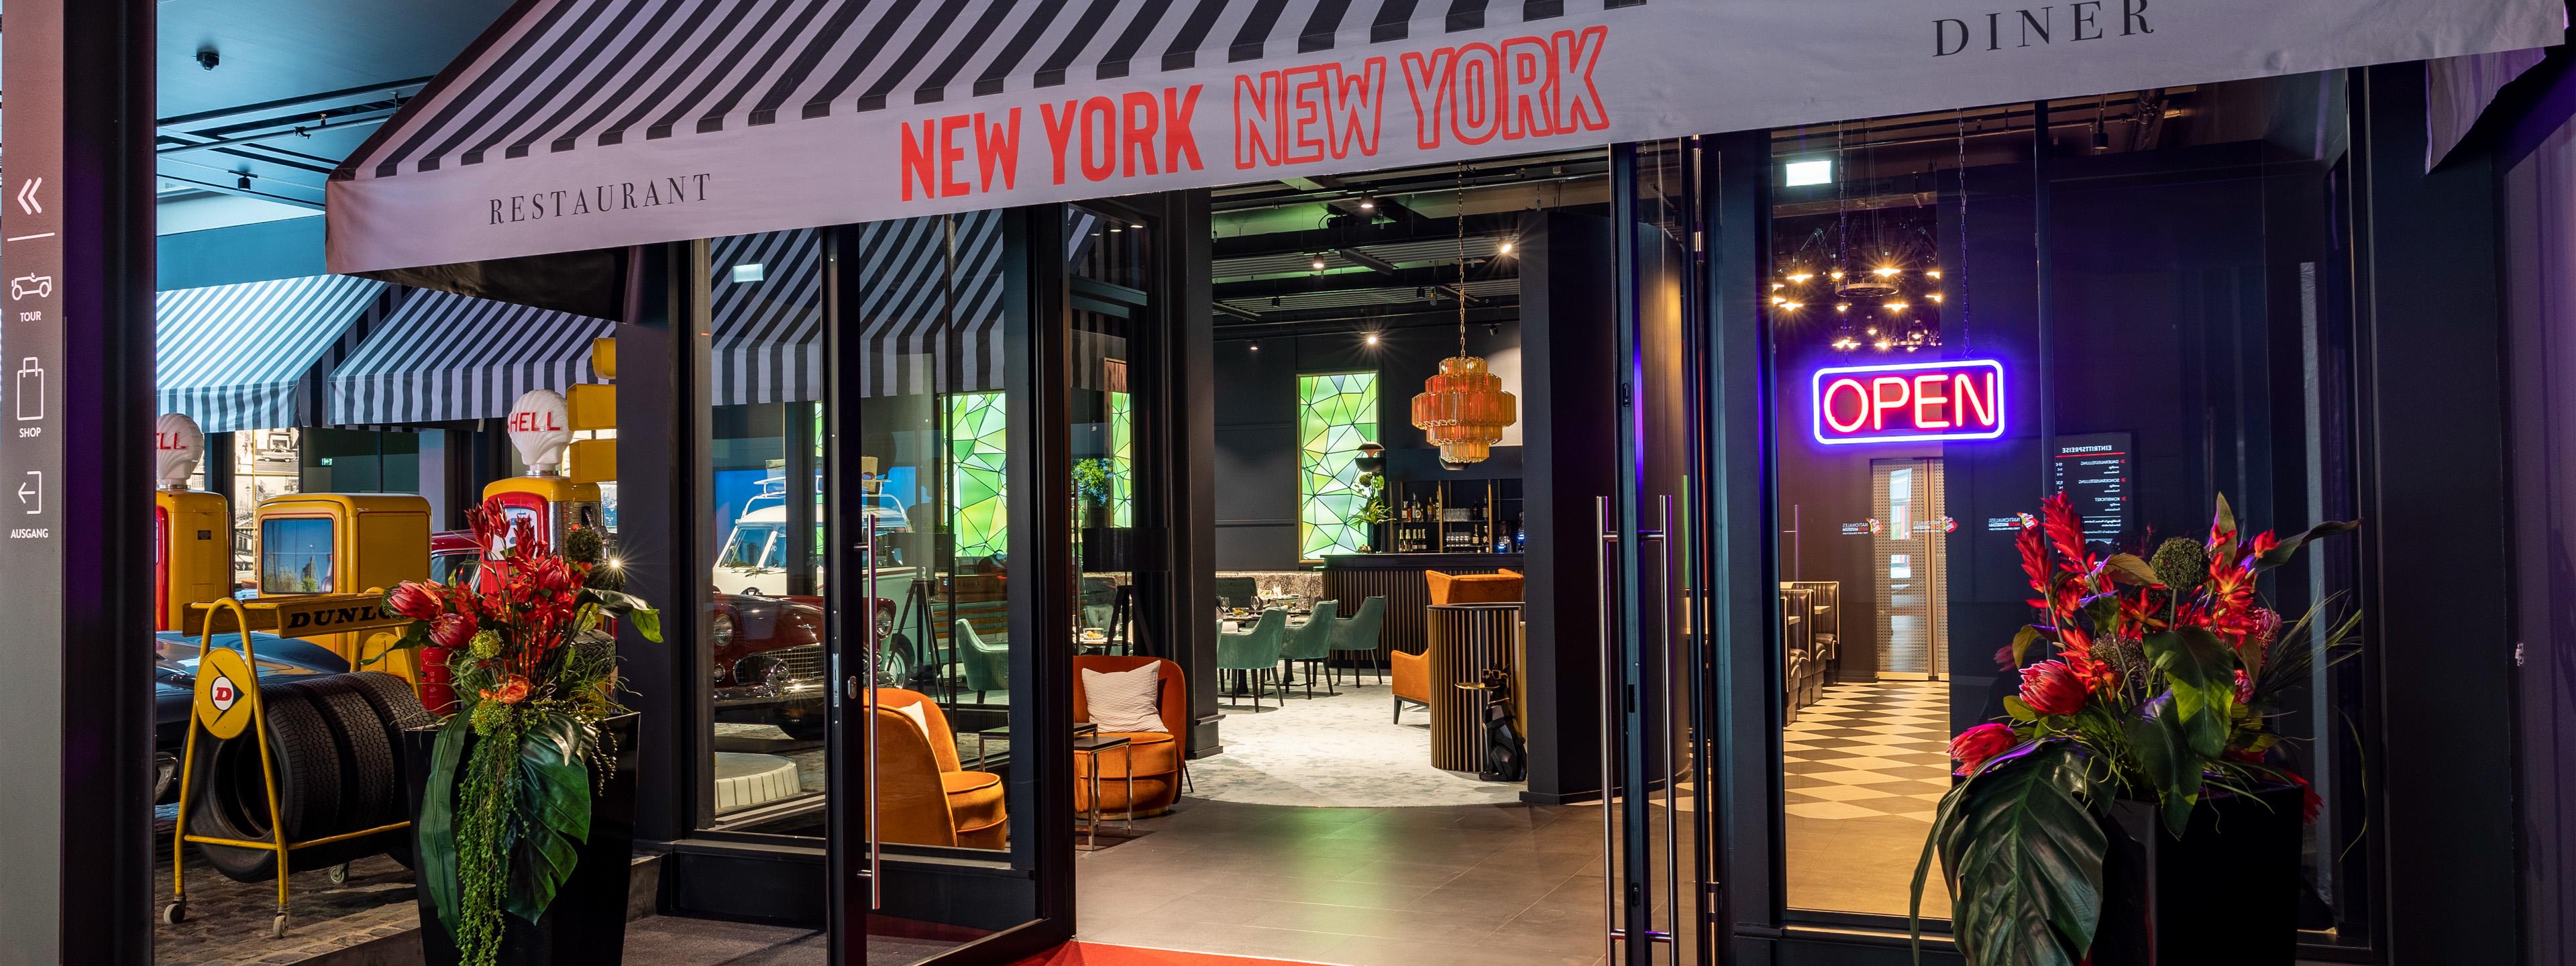 Restaurant & Diner „New York New York“